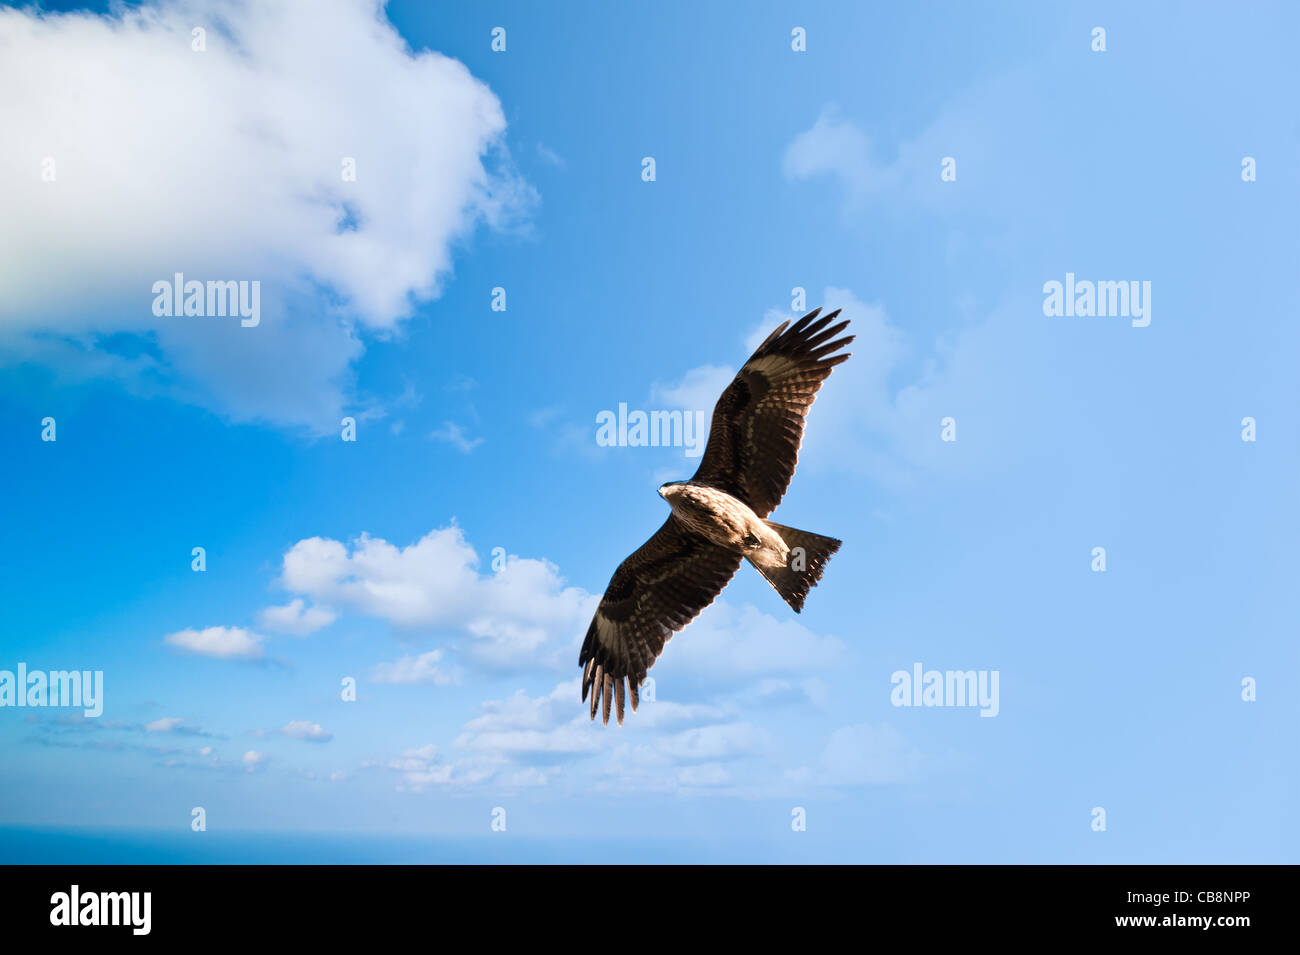 Wild falcon in the sky Stock Photo